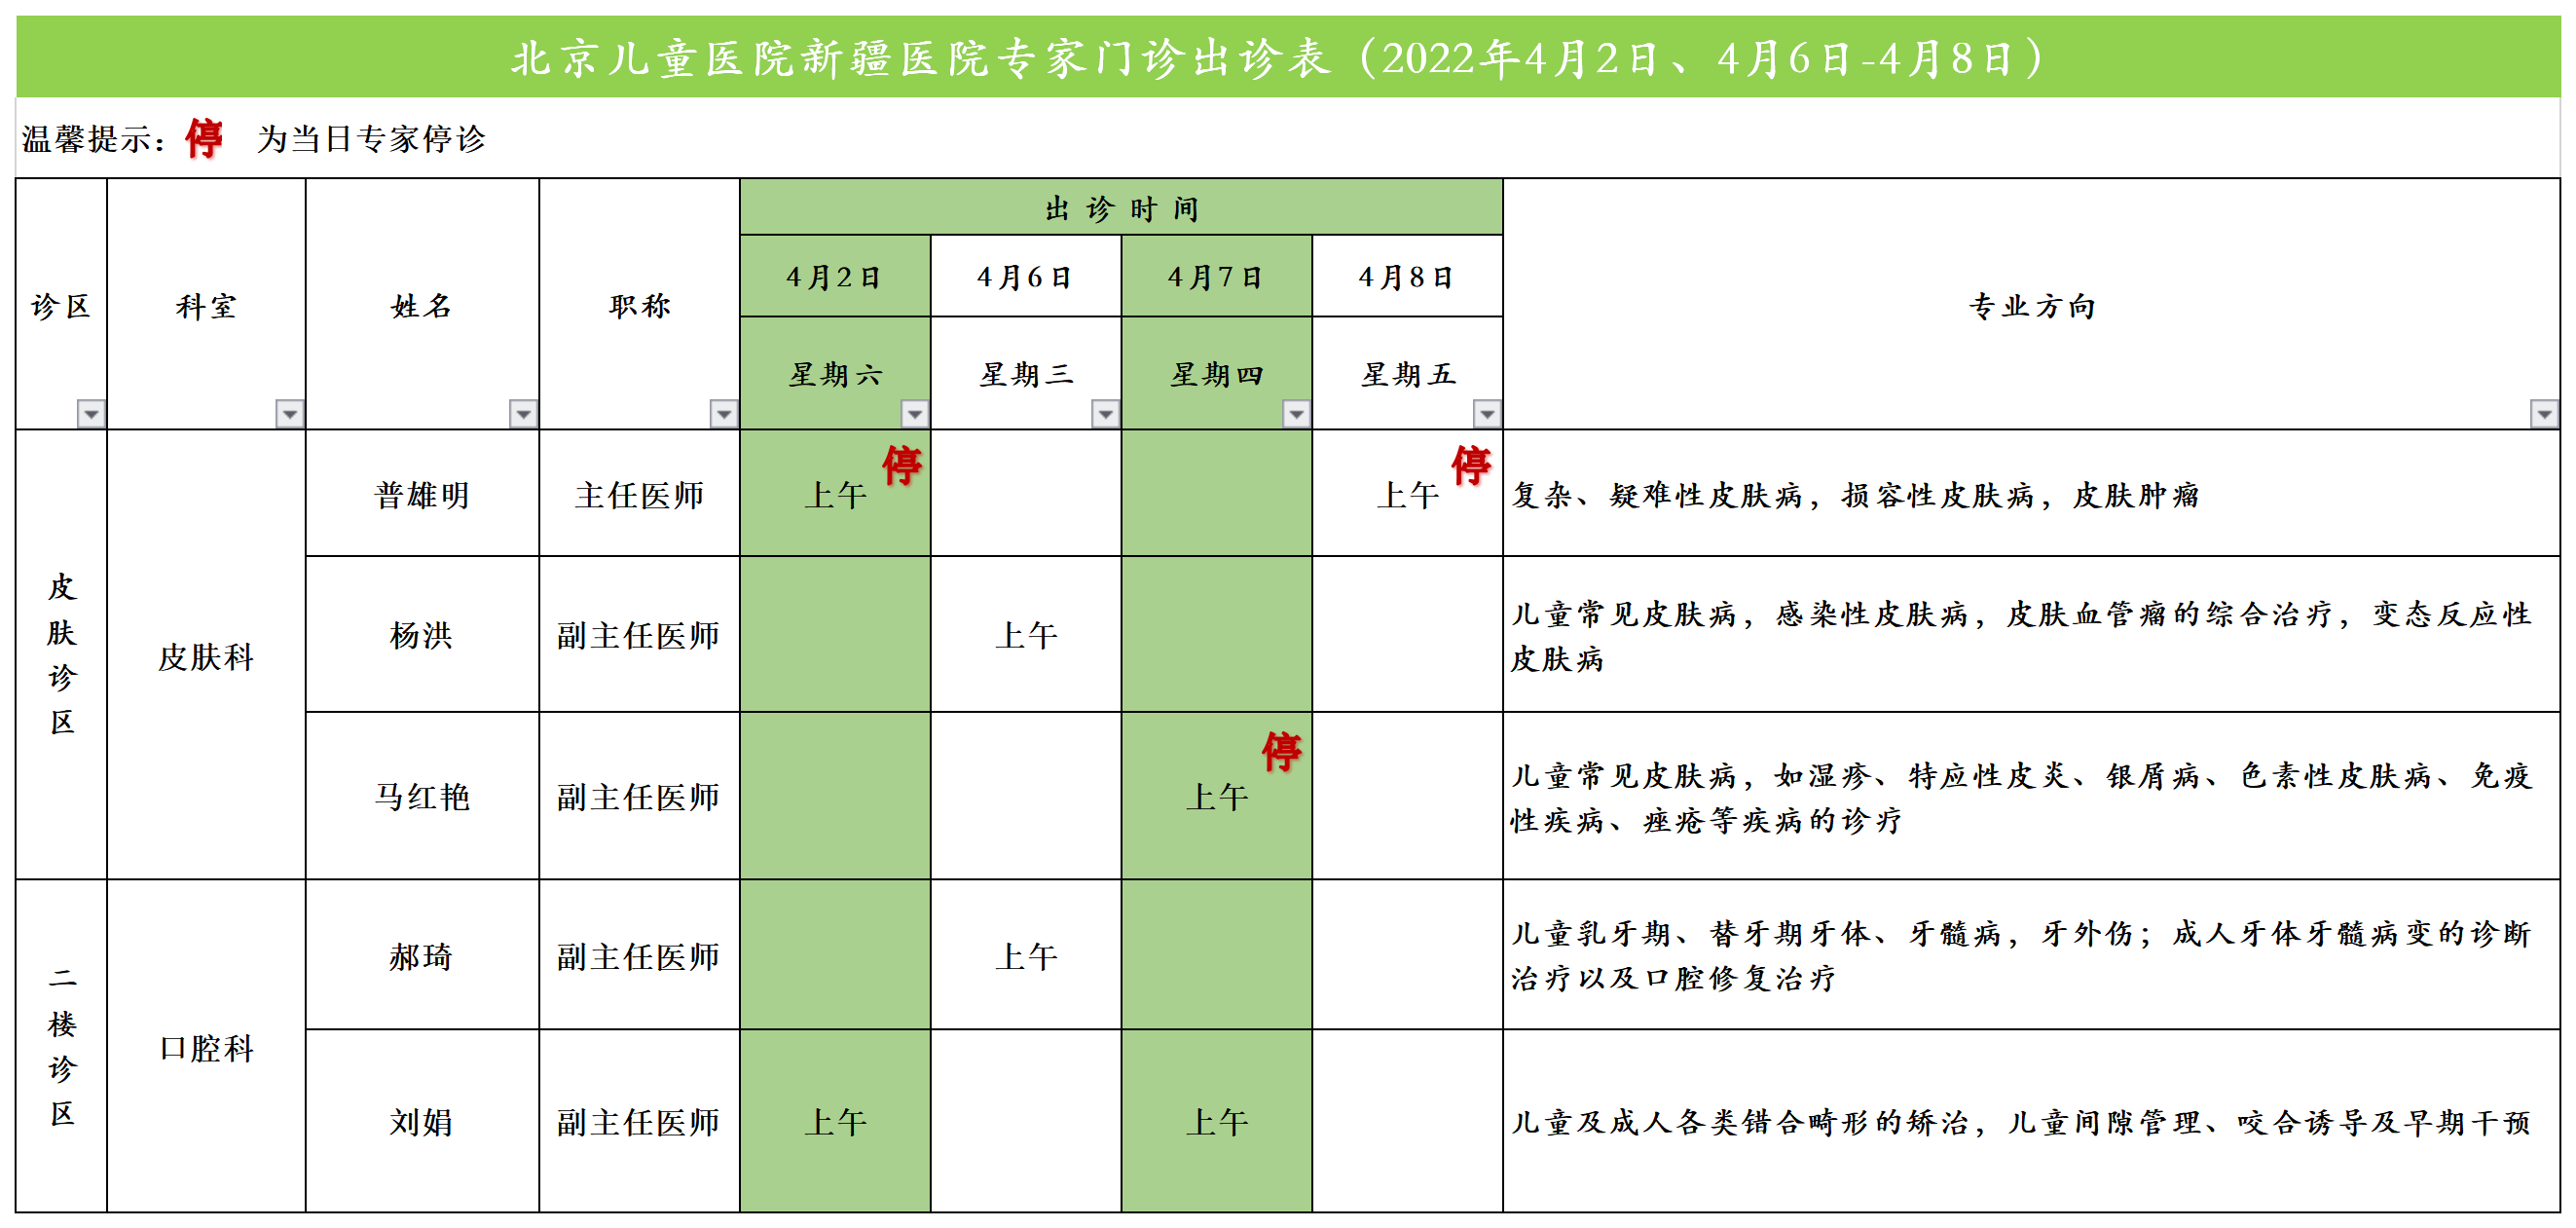 北京儿童医院新疆医院专家门诊出诊表（2022.3.31发）